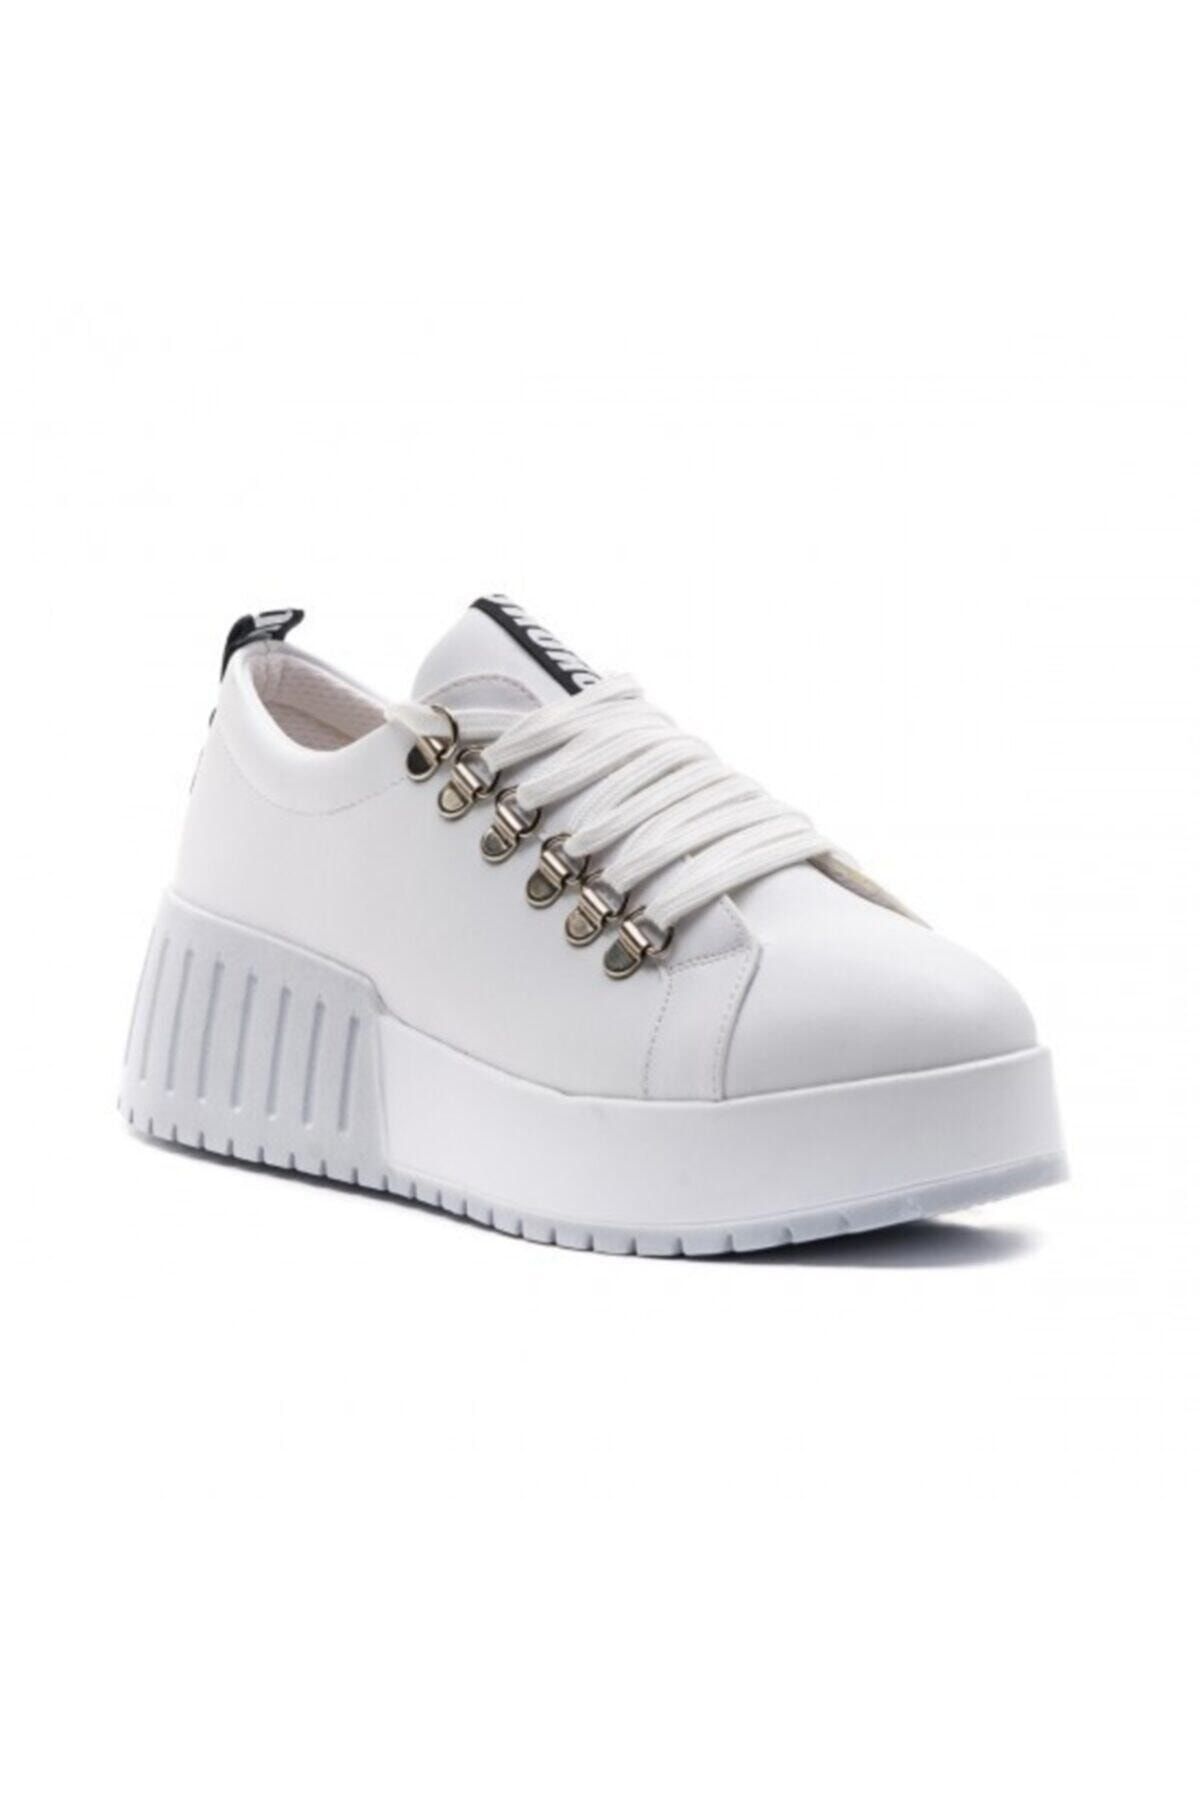 FLORİN Beyaz Bağcıklı Sneaker Kadın Ayakkabı